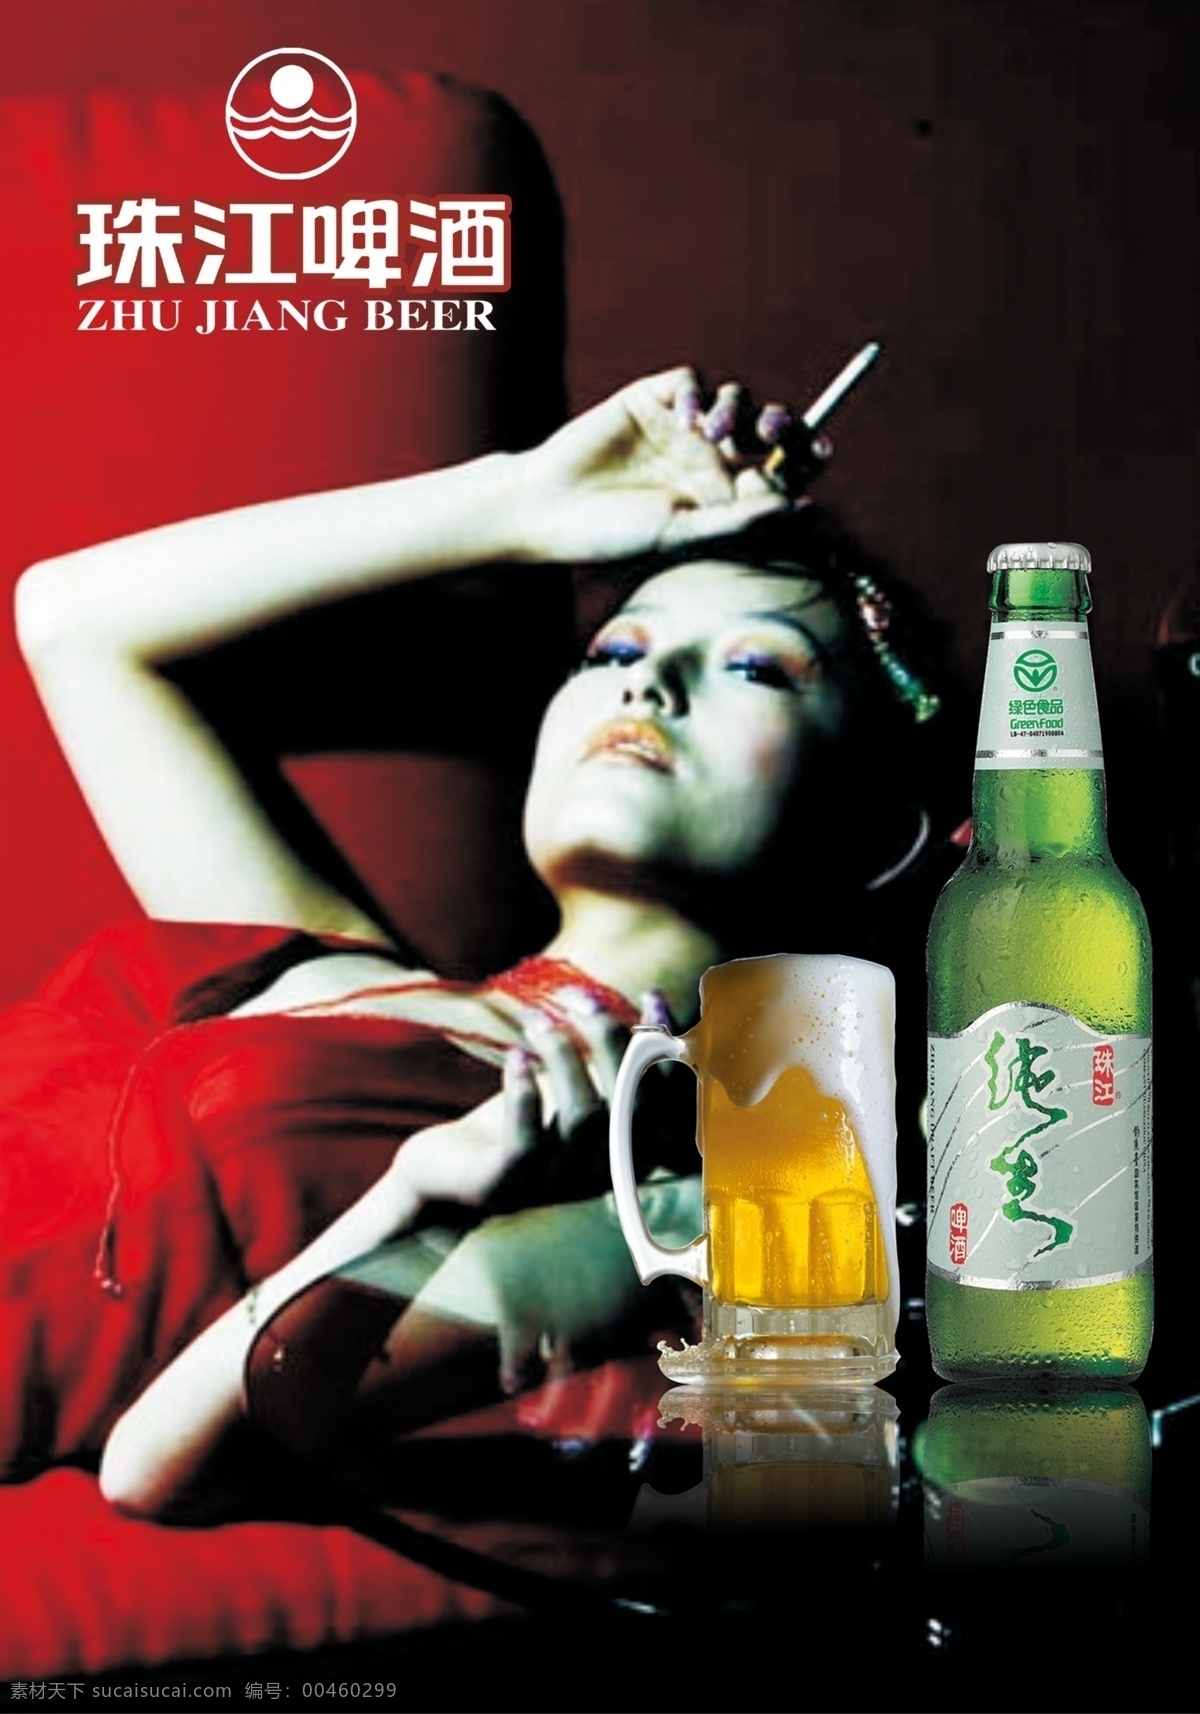 啤酒 psd素材 啤酒素材下载 源文件库 珠江 啤酒模板下载 矢量图 日常生活